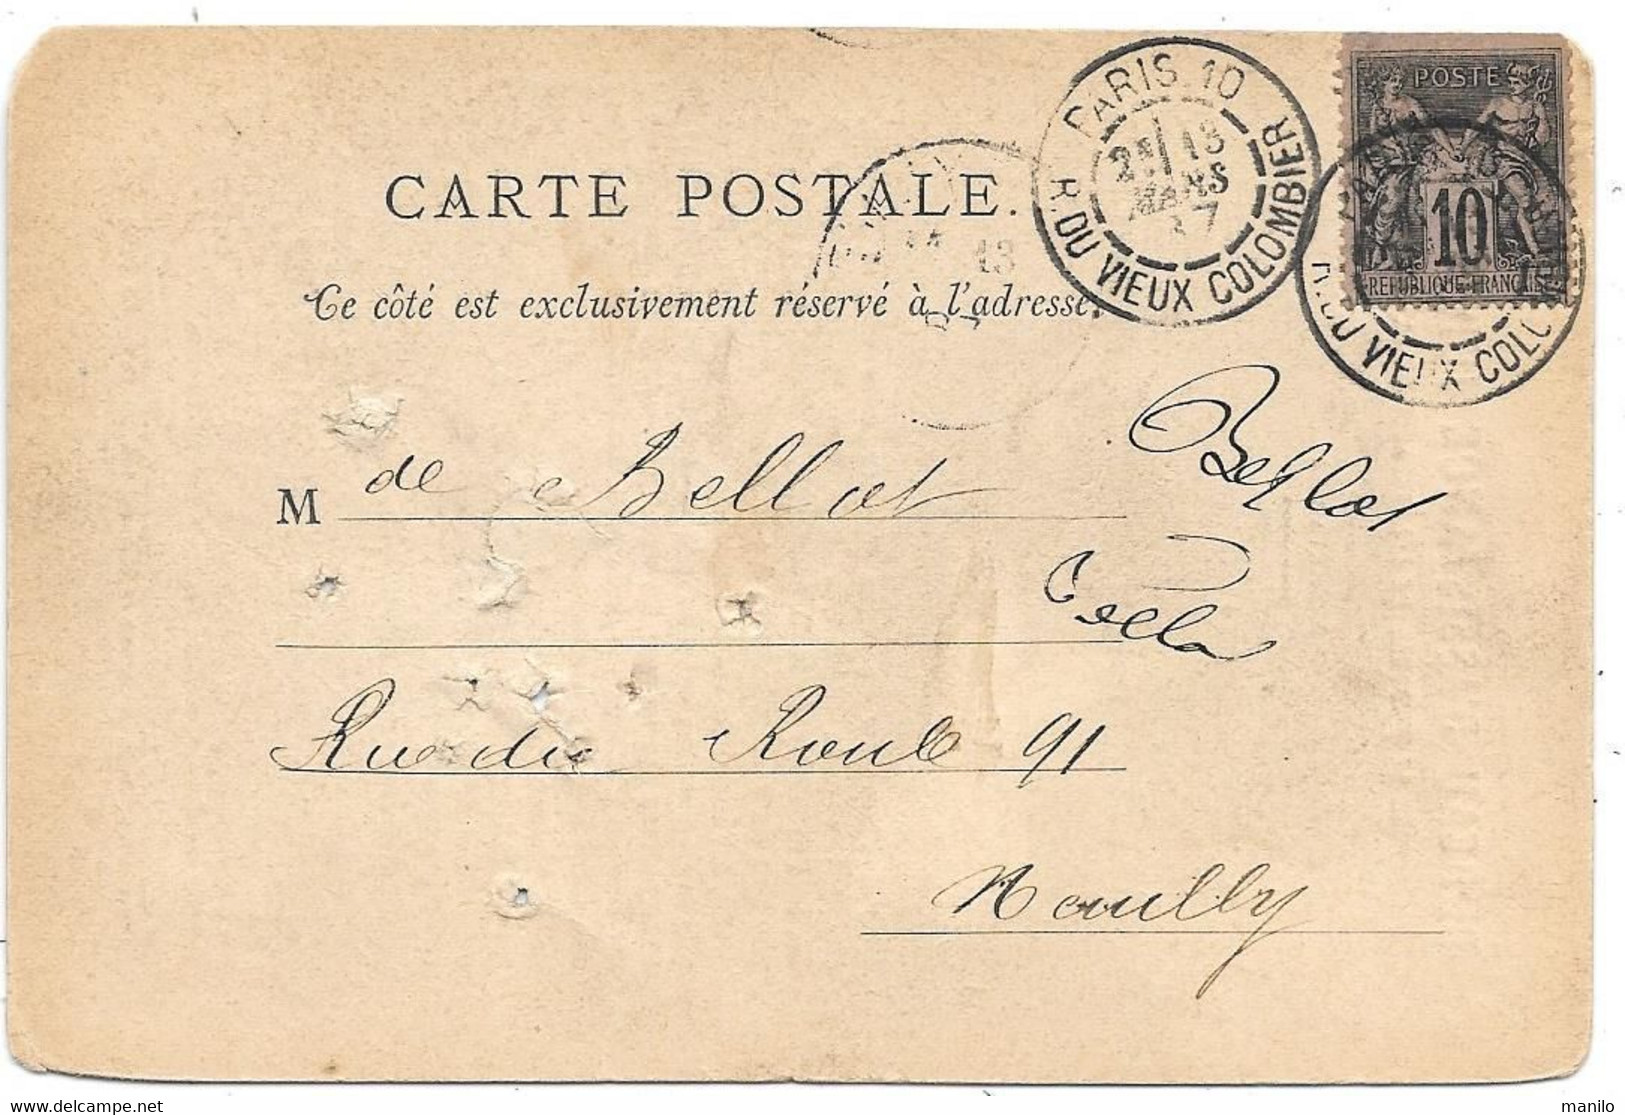 Carte Précurseur Repiquage BUREAU ASSISTANCE JUDICIAIRE 1887 (Refus) Timbre Type SAGE  Paris - Neuilly S/seine -65542 - Cartes Précurseurs